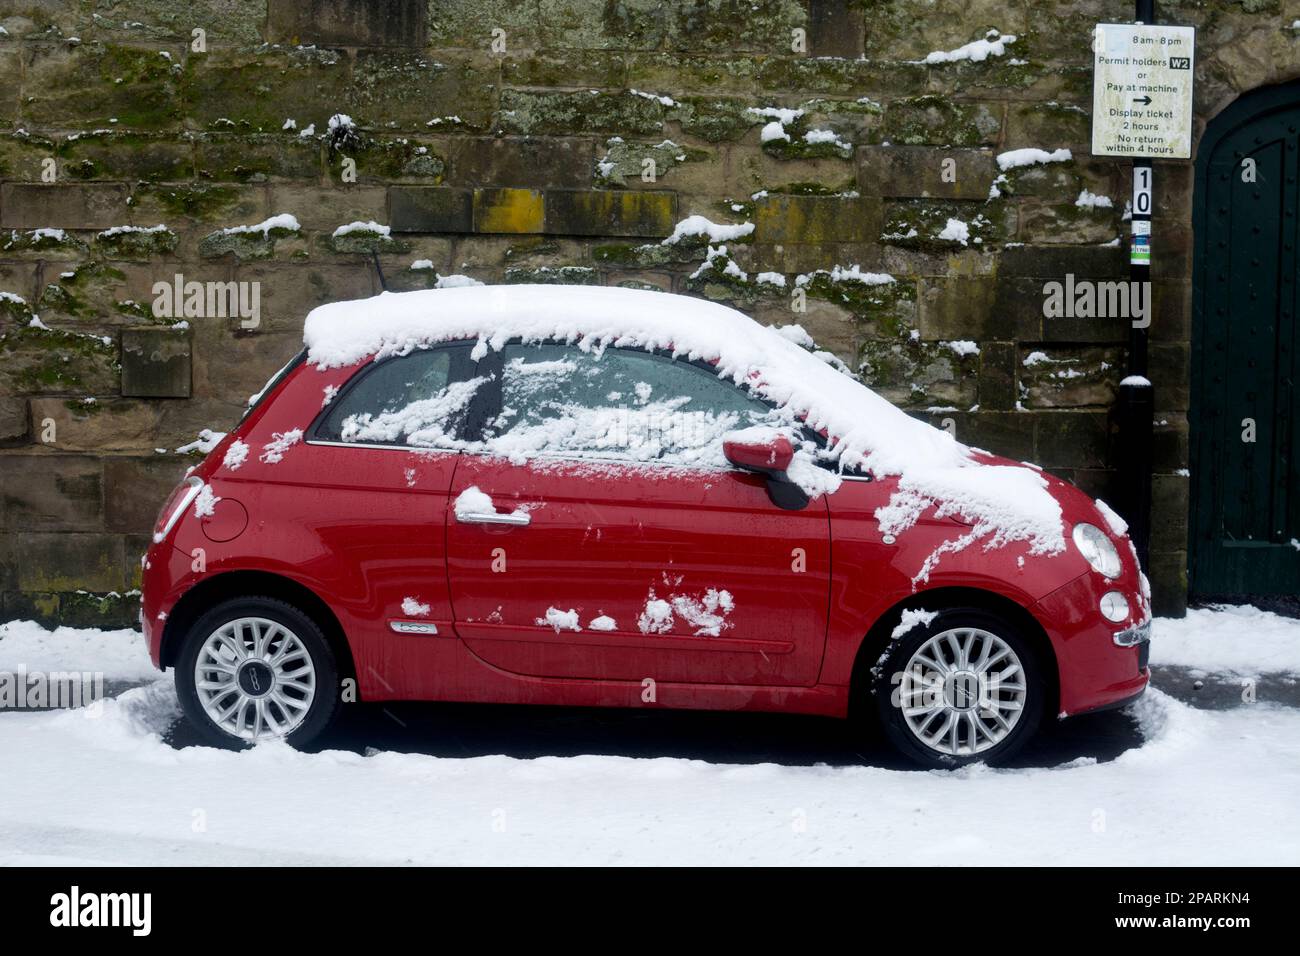 Voiture Fiat 500 garée dans la neige, Warwick, Royaume-Uni Banque D'Images